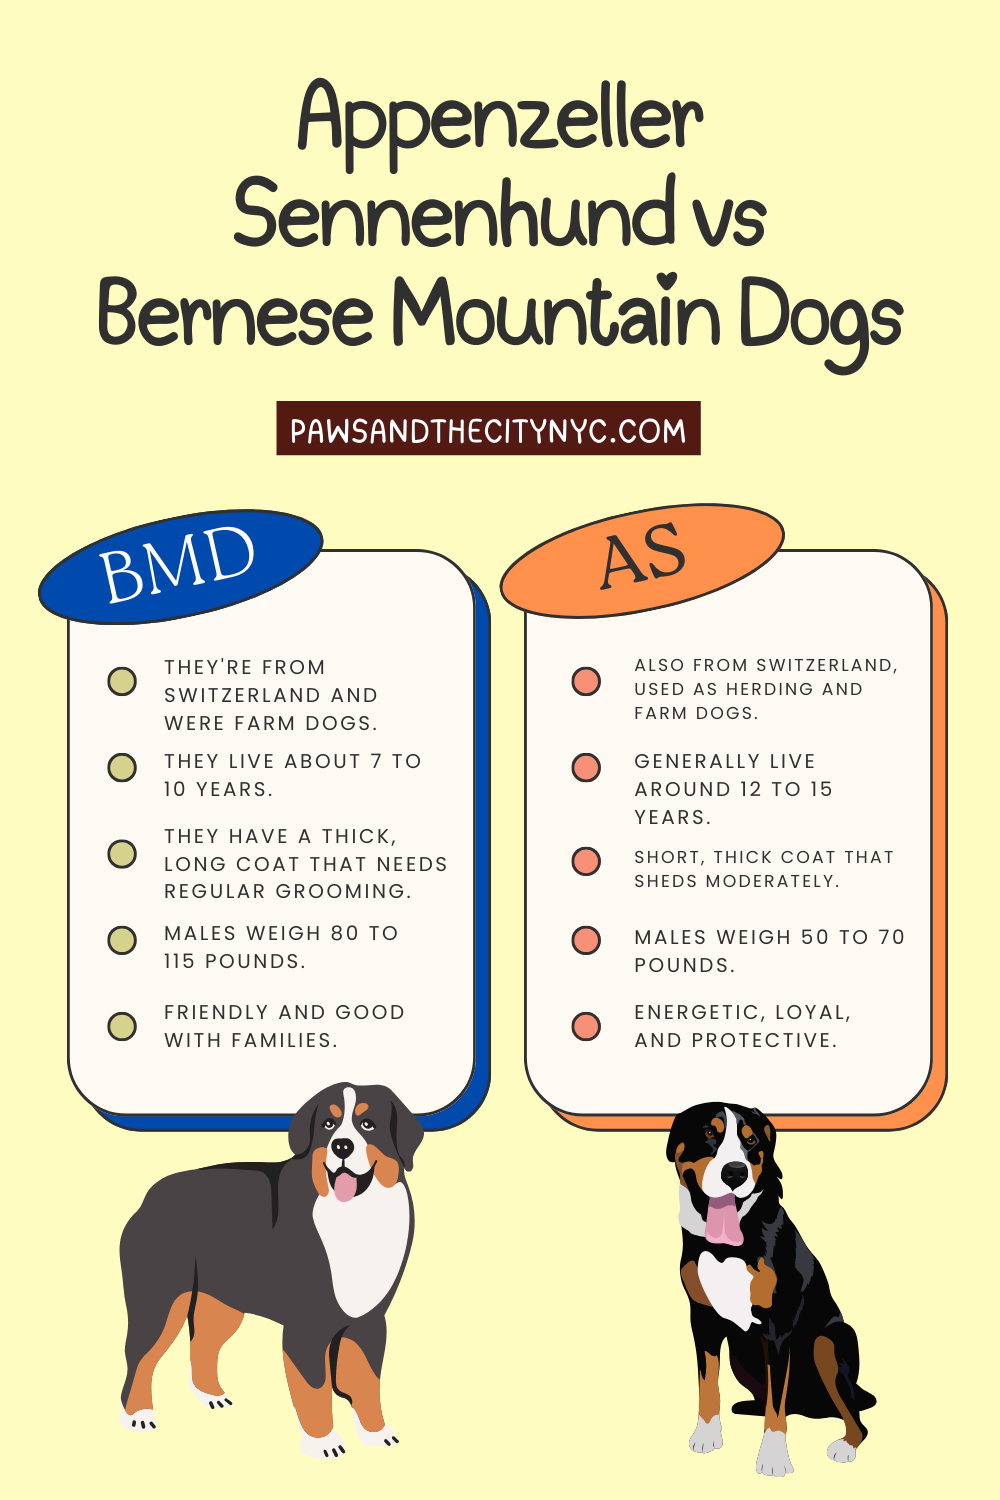 Appenzeller Sennenhund vs Bernese Mountain Dog